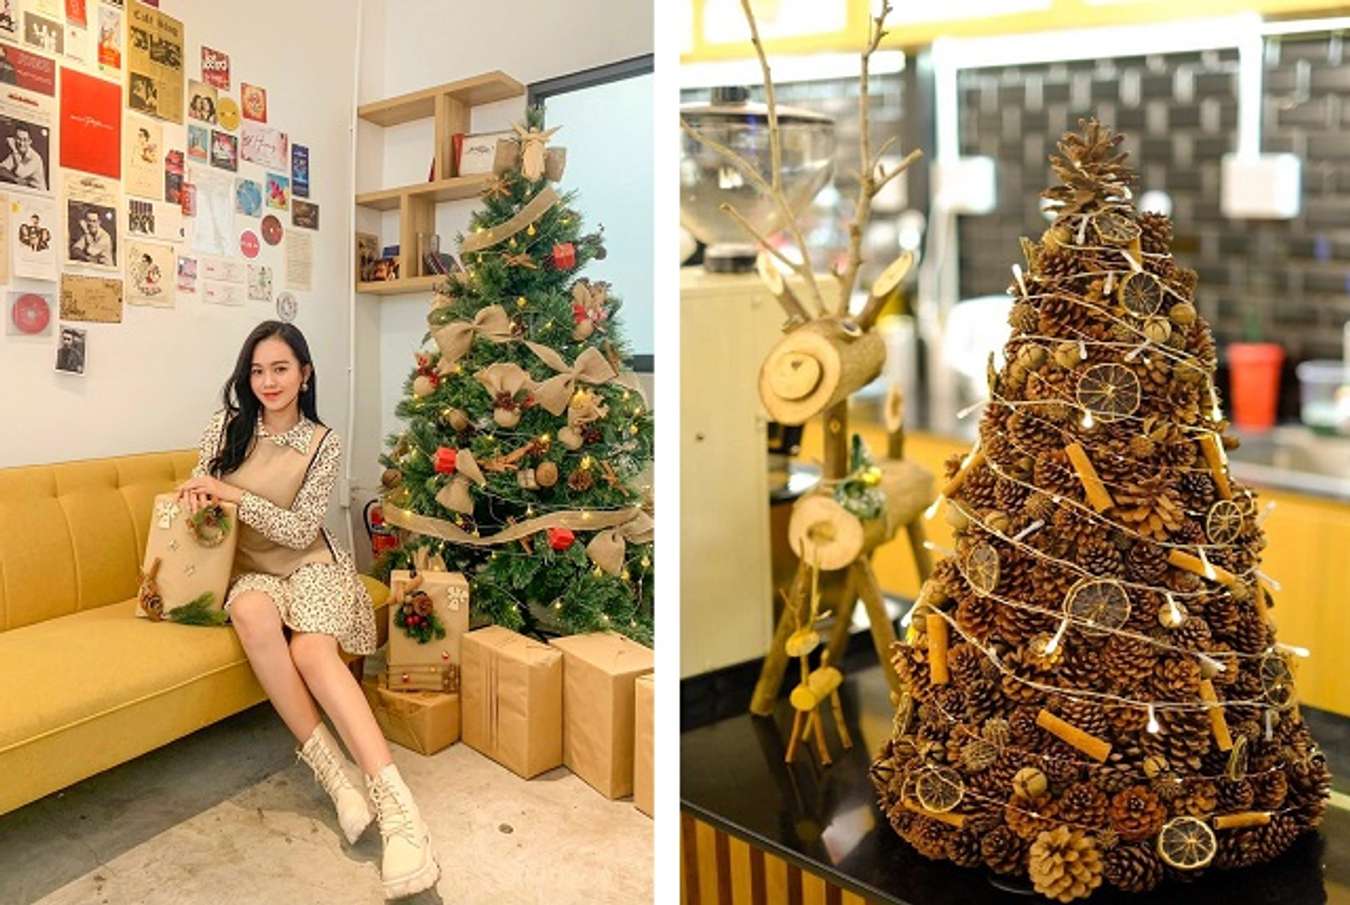 Hãy đến thưởng thức ly cà phê đầy hương vị và cảm nhận không khí Giáng sinh tại quán cafe trang trí Noel đẹp lung linh ở Sài Gòn. Bạn sẽ được chiêm ngưỡng những trang trí đầy sáng tạo và tinh tế, tạo nên không gian ấm áp và thật đặc biệt.